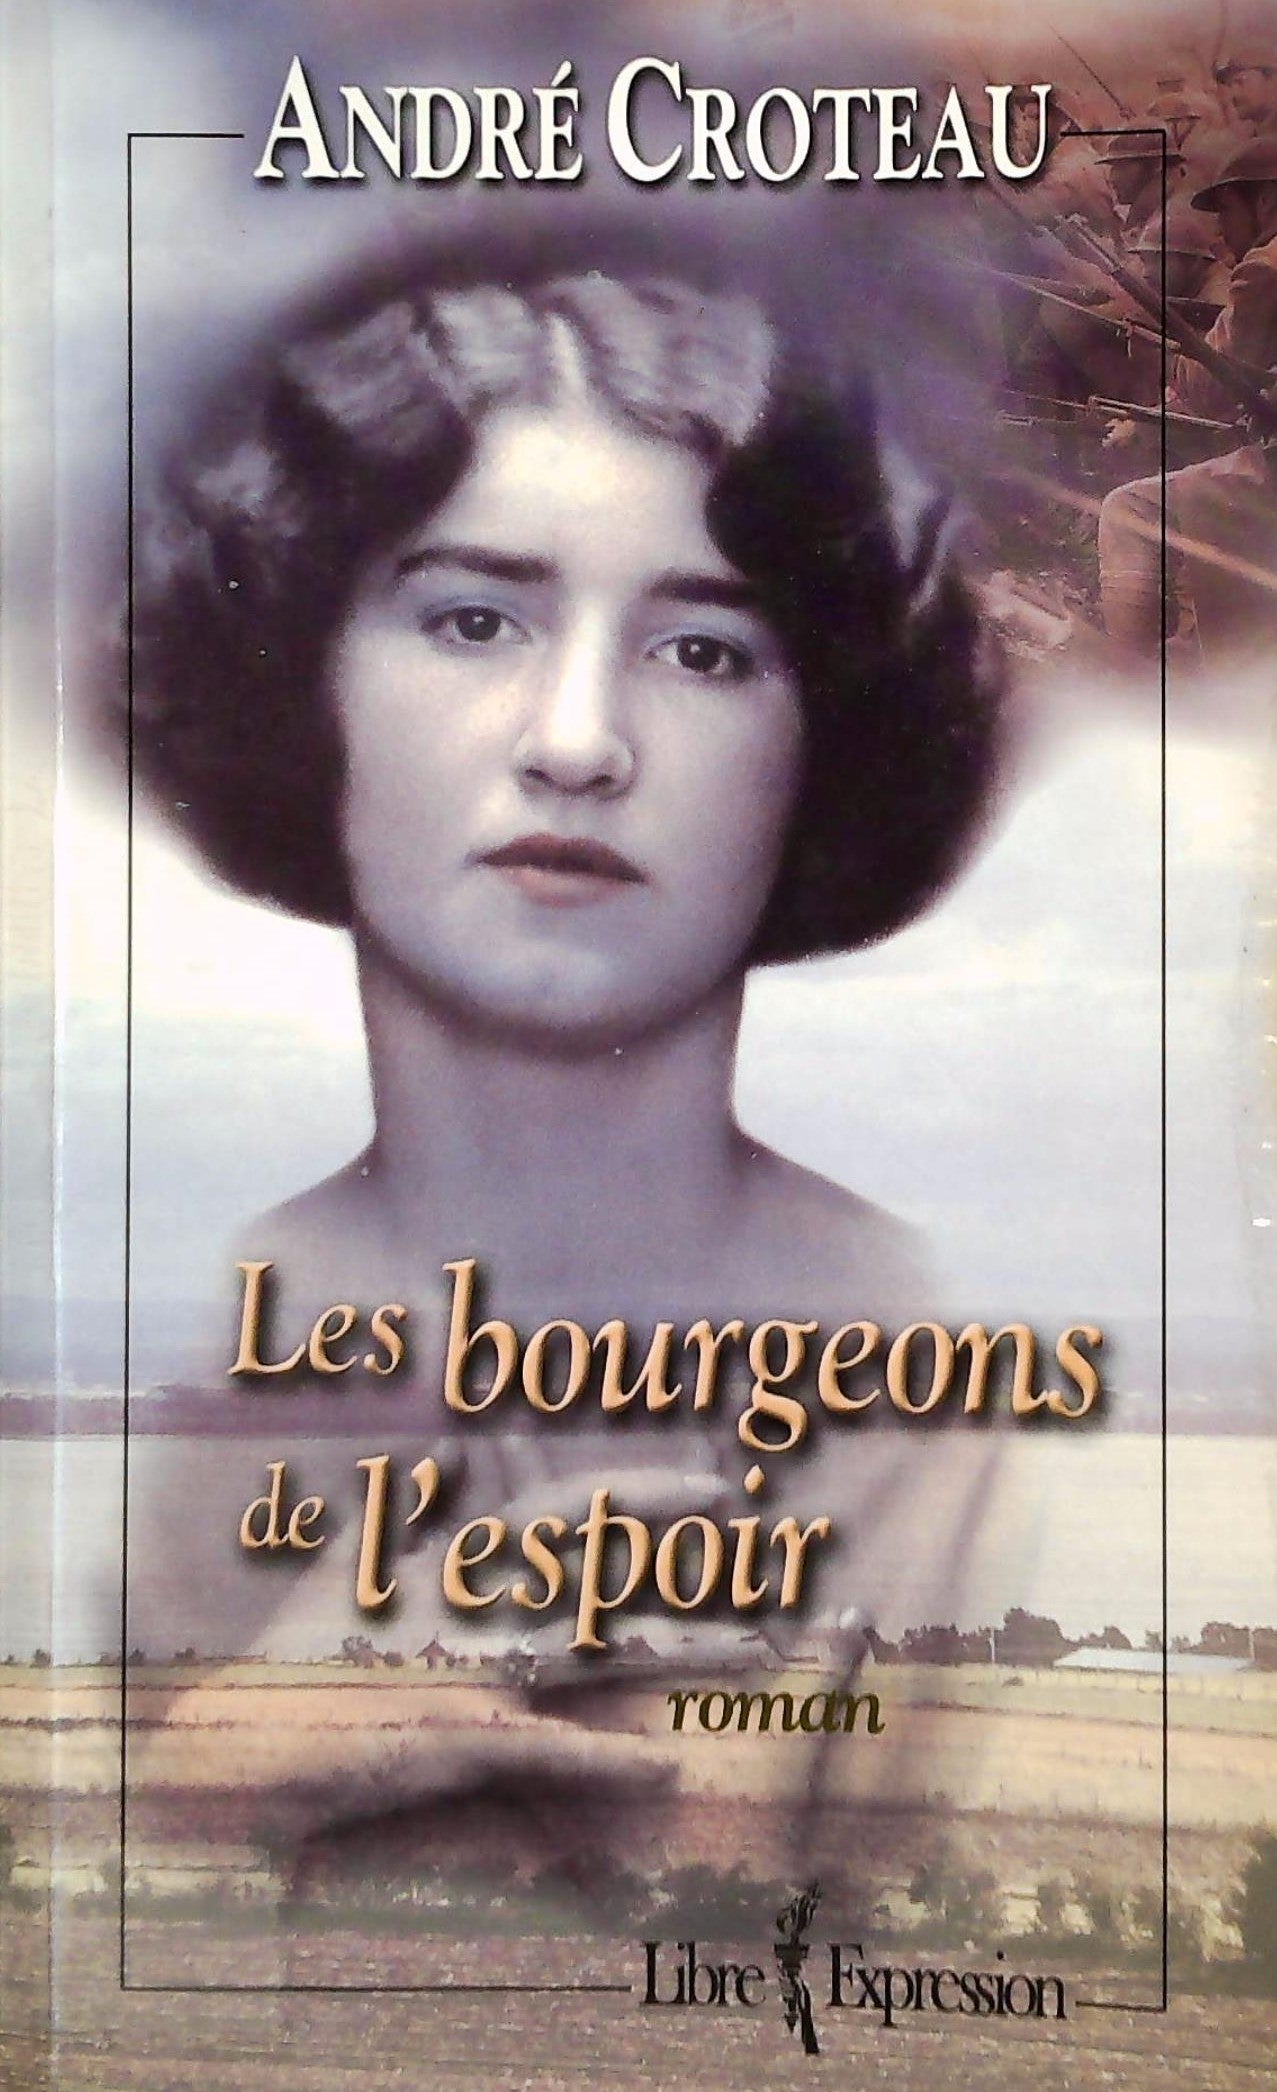 Livre ISBN 2891118375 Les bourgeons de l'espoir (André Croteau)